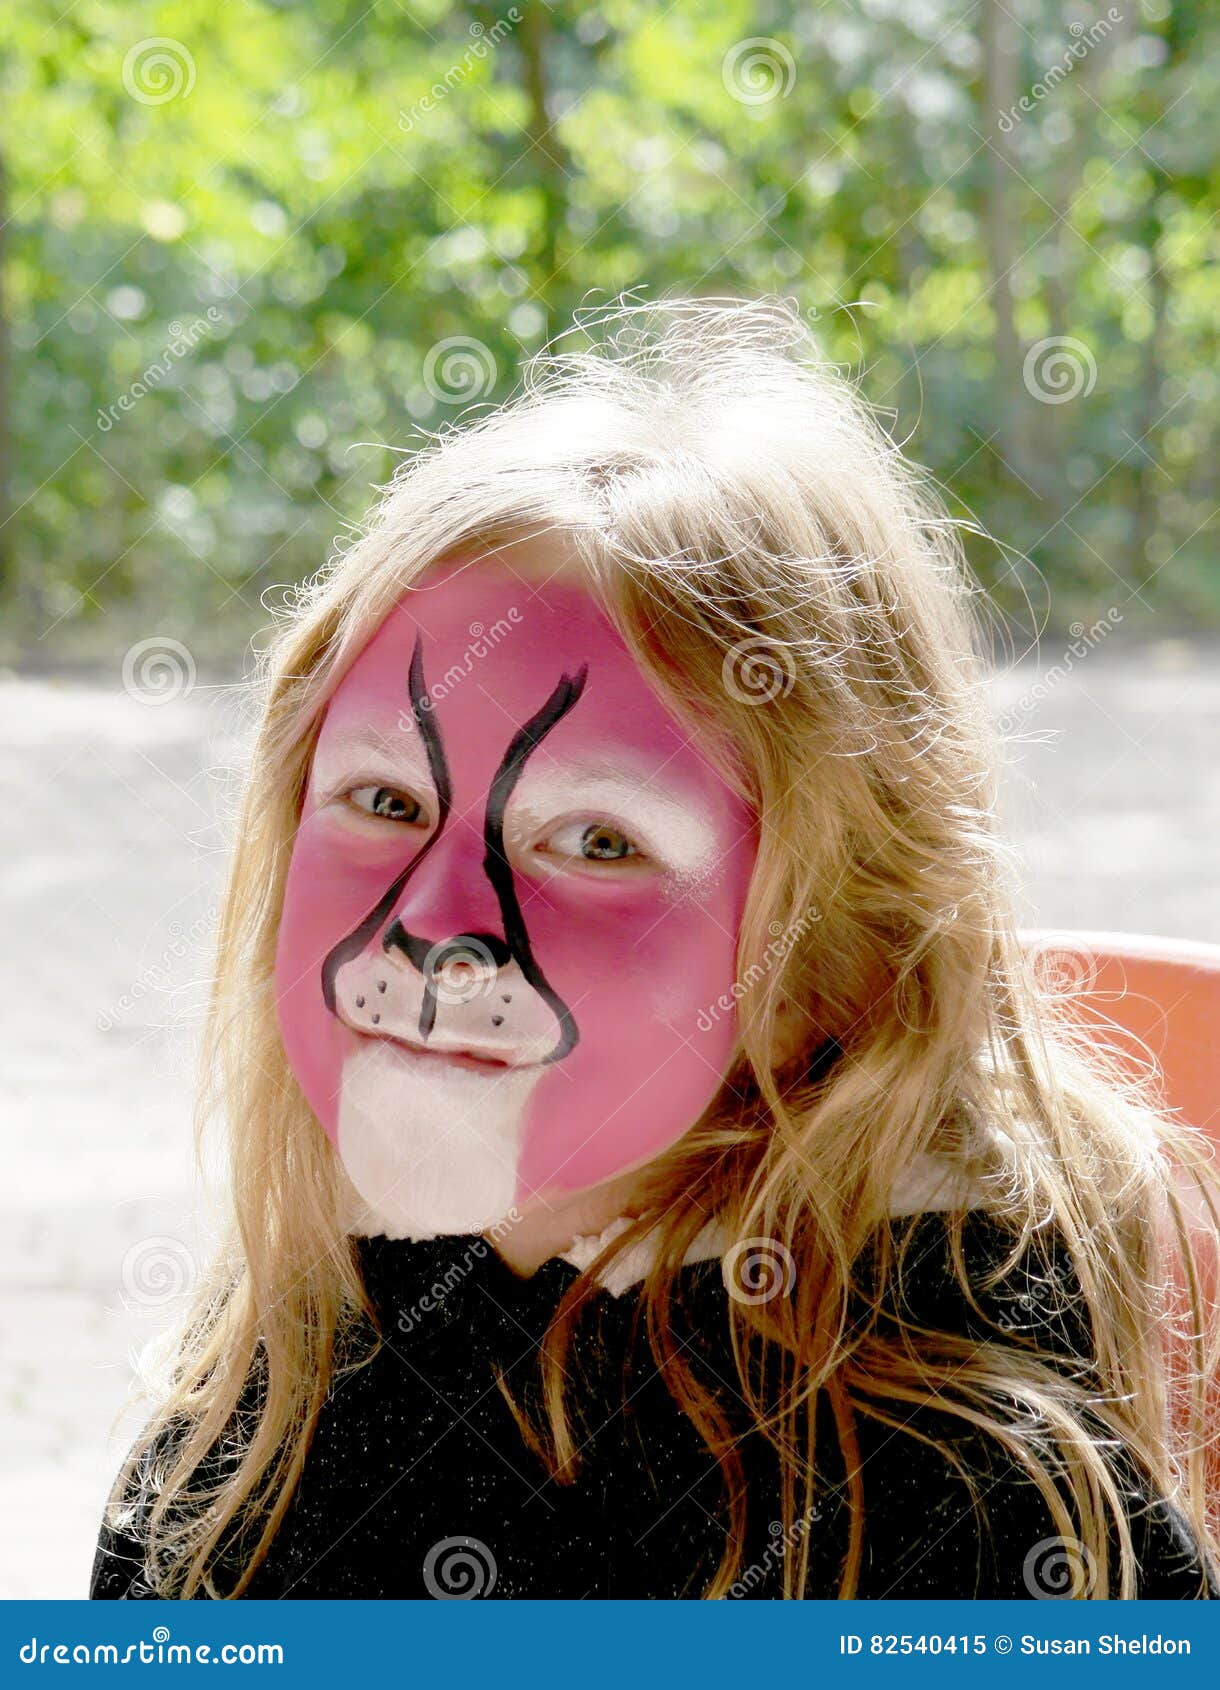 Libro Guinness de récord mundial Canciones infantiles Refinamiento Niño con la cara pintada imagen de archivo. Imagen de animal - 82540415